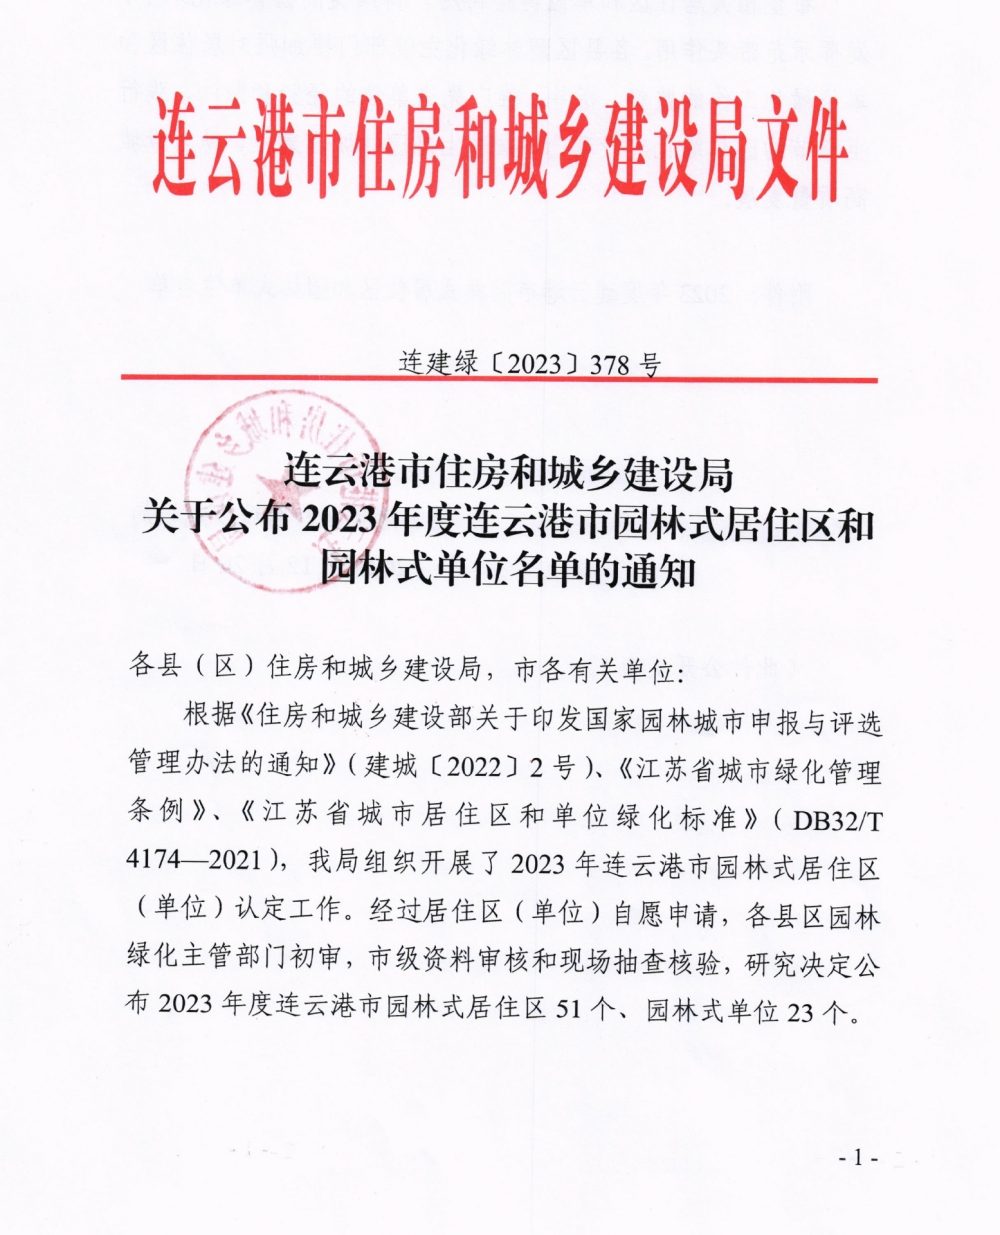 萬润·星河国际荣获“2023年度连云港市园林式居住区”称号-连云港房产网